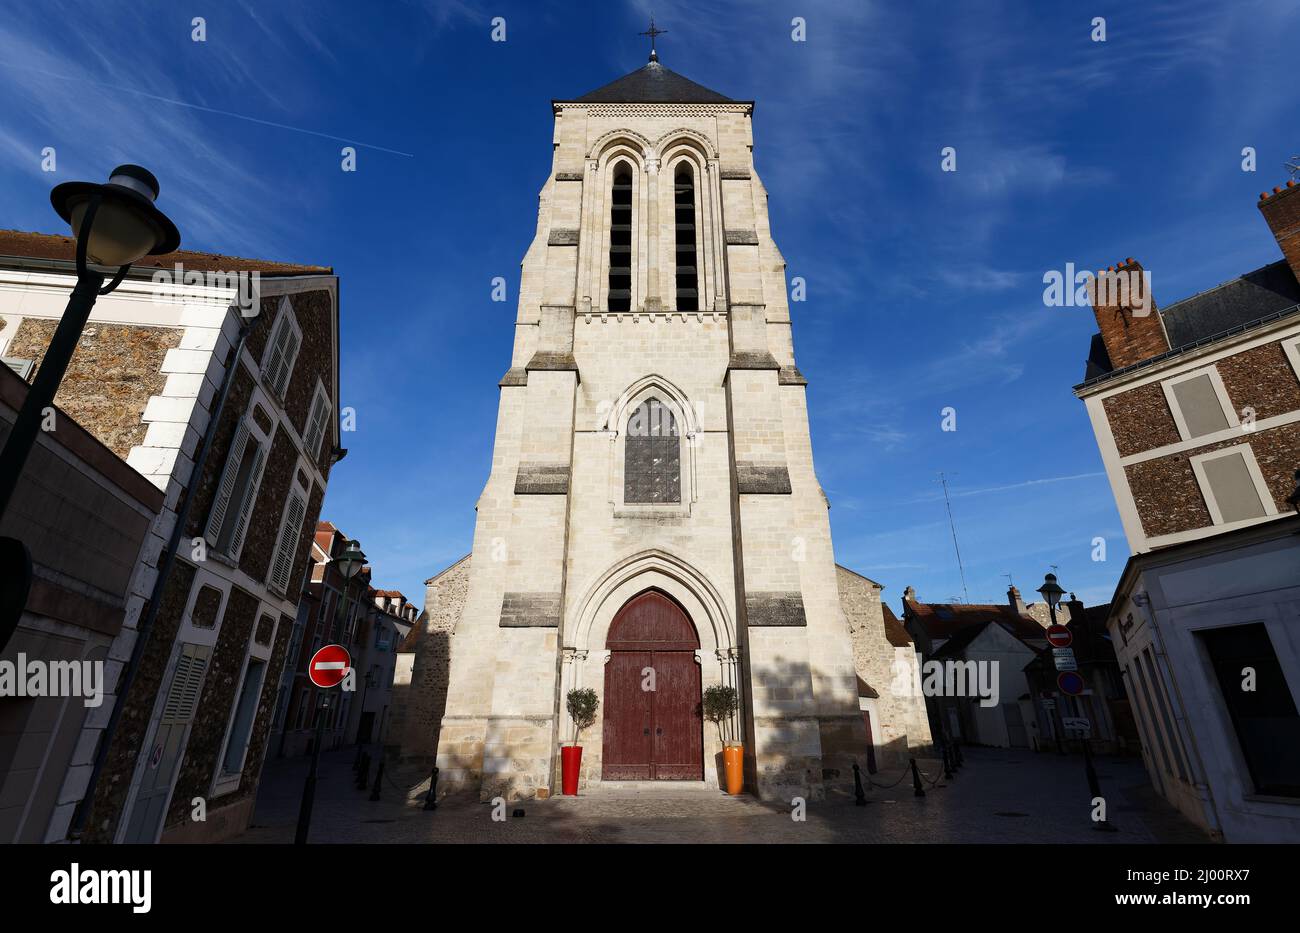 La cathédrale Saint-Spire Corbeil est une église catholique romaine située dans la ville de Corbeil-Essonnes, en France. L a structure actuelle a été construite en 1437. Banque D'Images